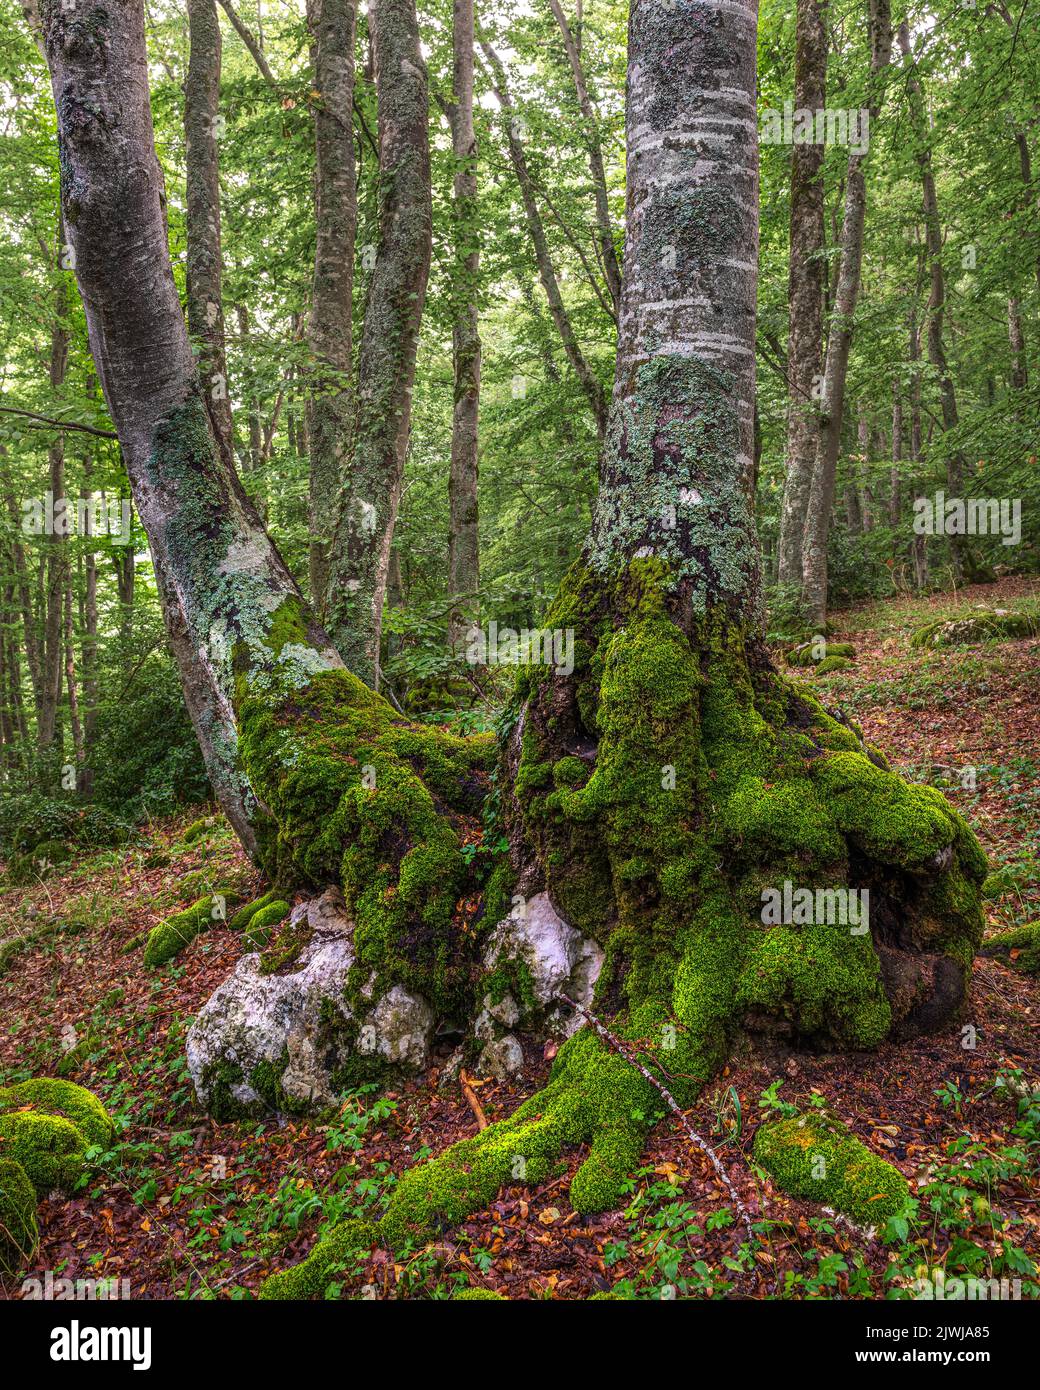 Árboles de haya con musgo y hojas caídas crecen entre las rocas que emergen del suelo. Reserva Natural Bosco di Sant'Antonio, Pescocostanzo, Abruzos Foto de stock